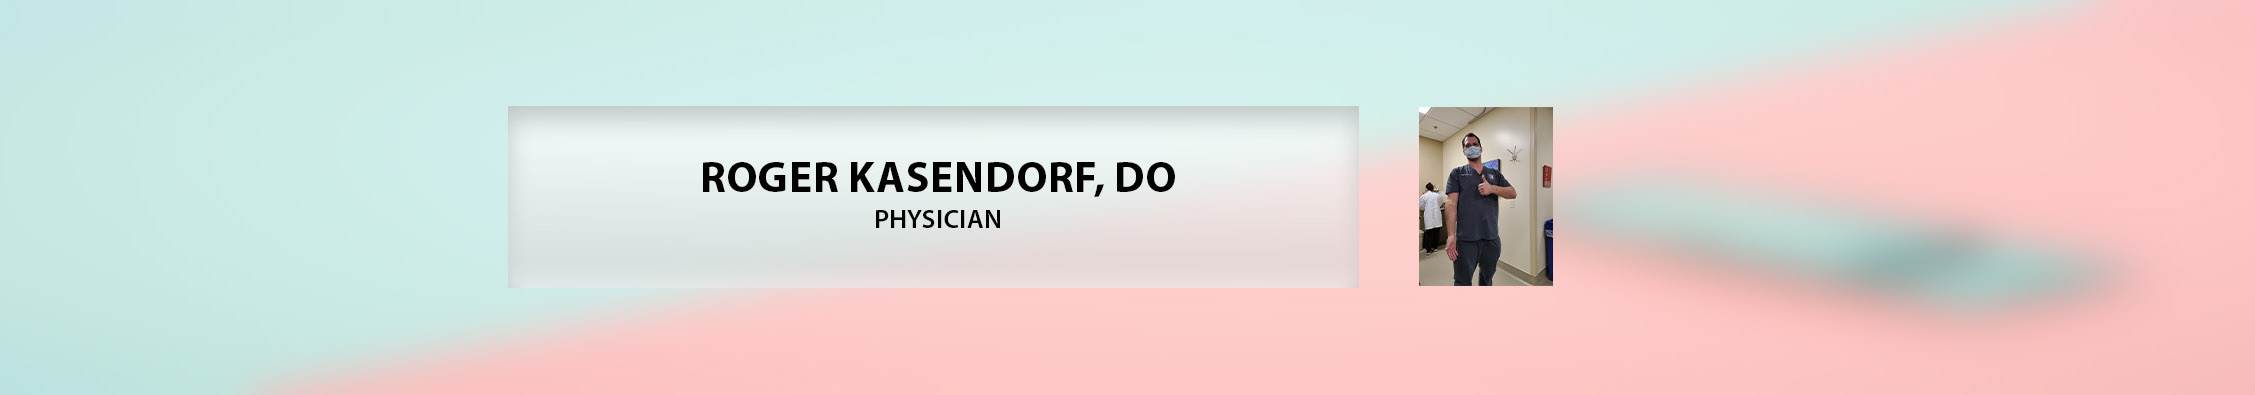 Roger Kasendorf, DO's profile banner